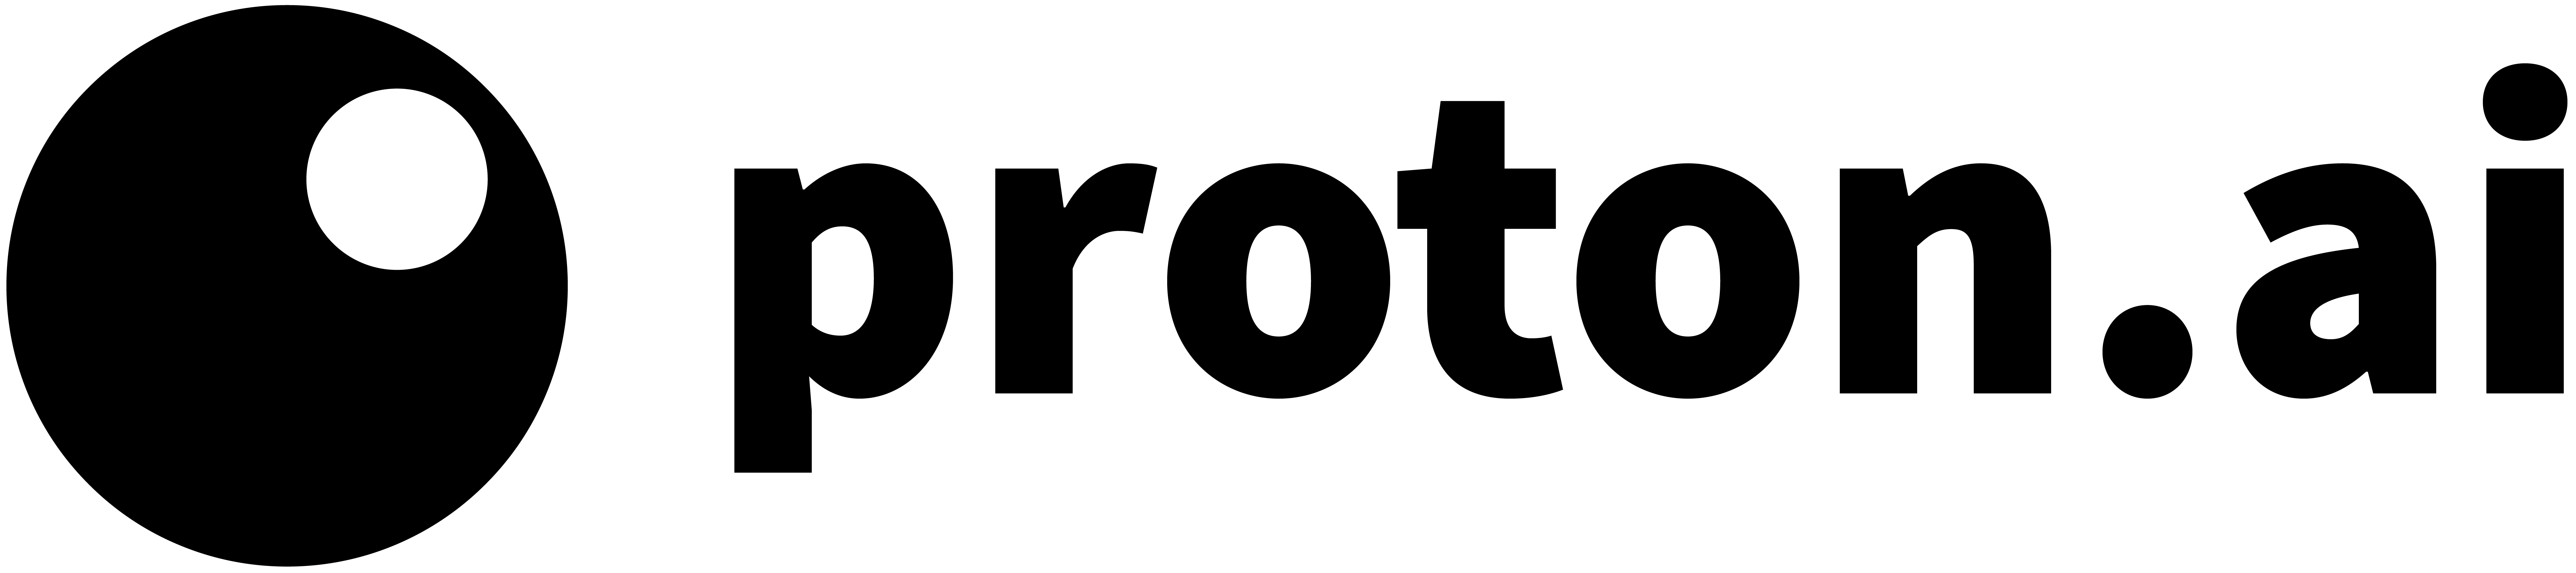 Proton Logo.png